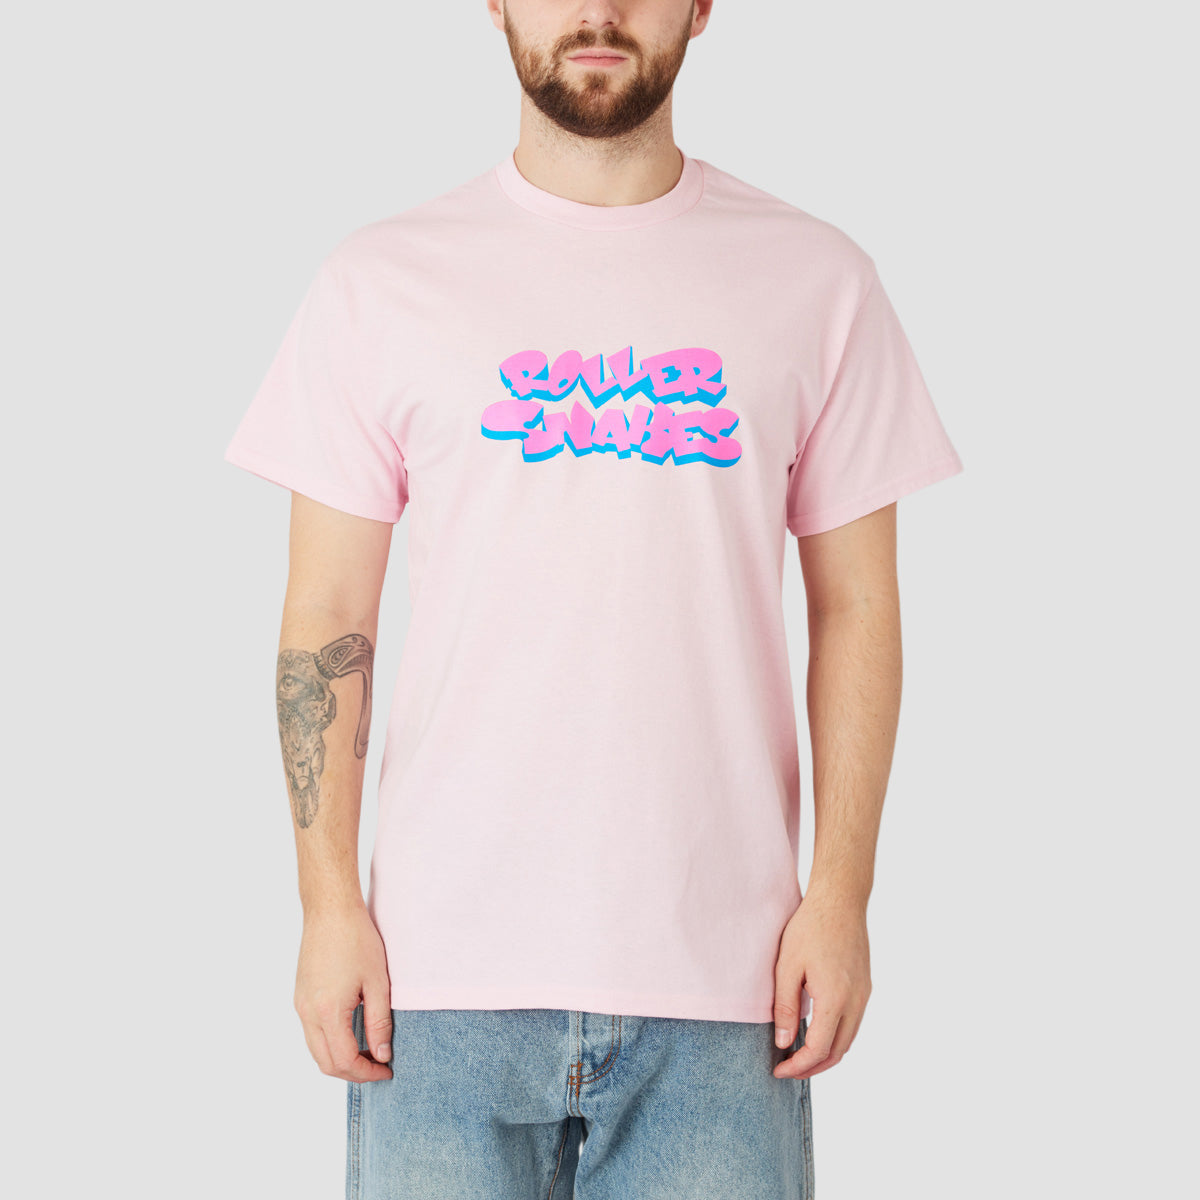 Rollersnakes Marian T-Shirt Light Pink